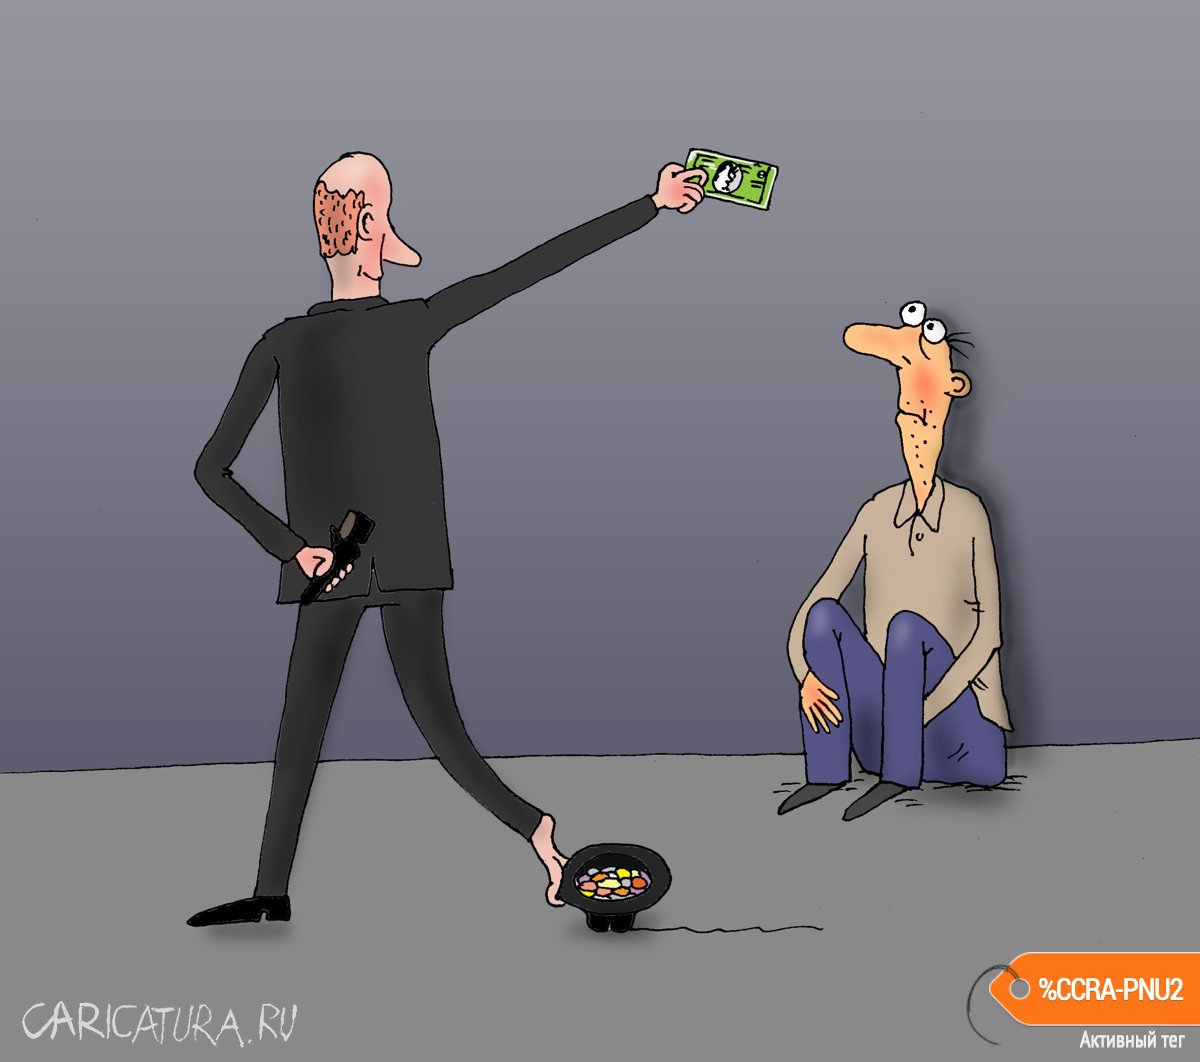 Карикатура "Фокус", Валерий Тарасенко